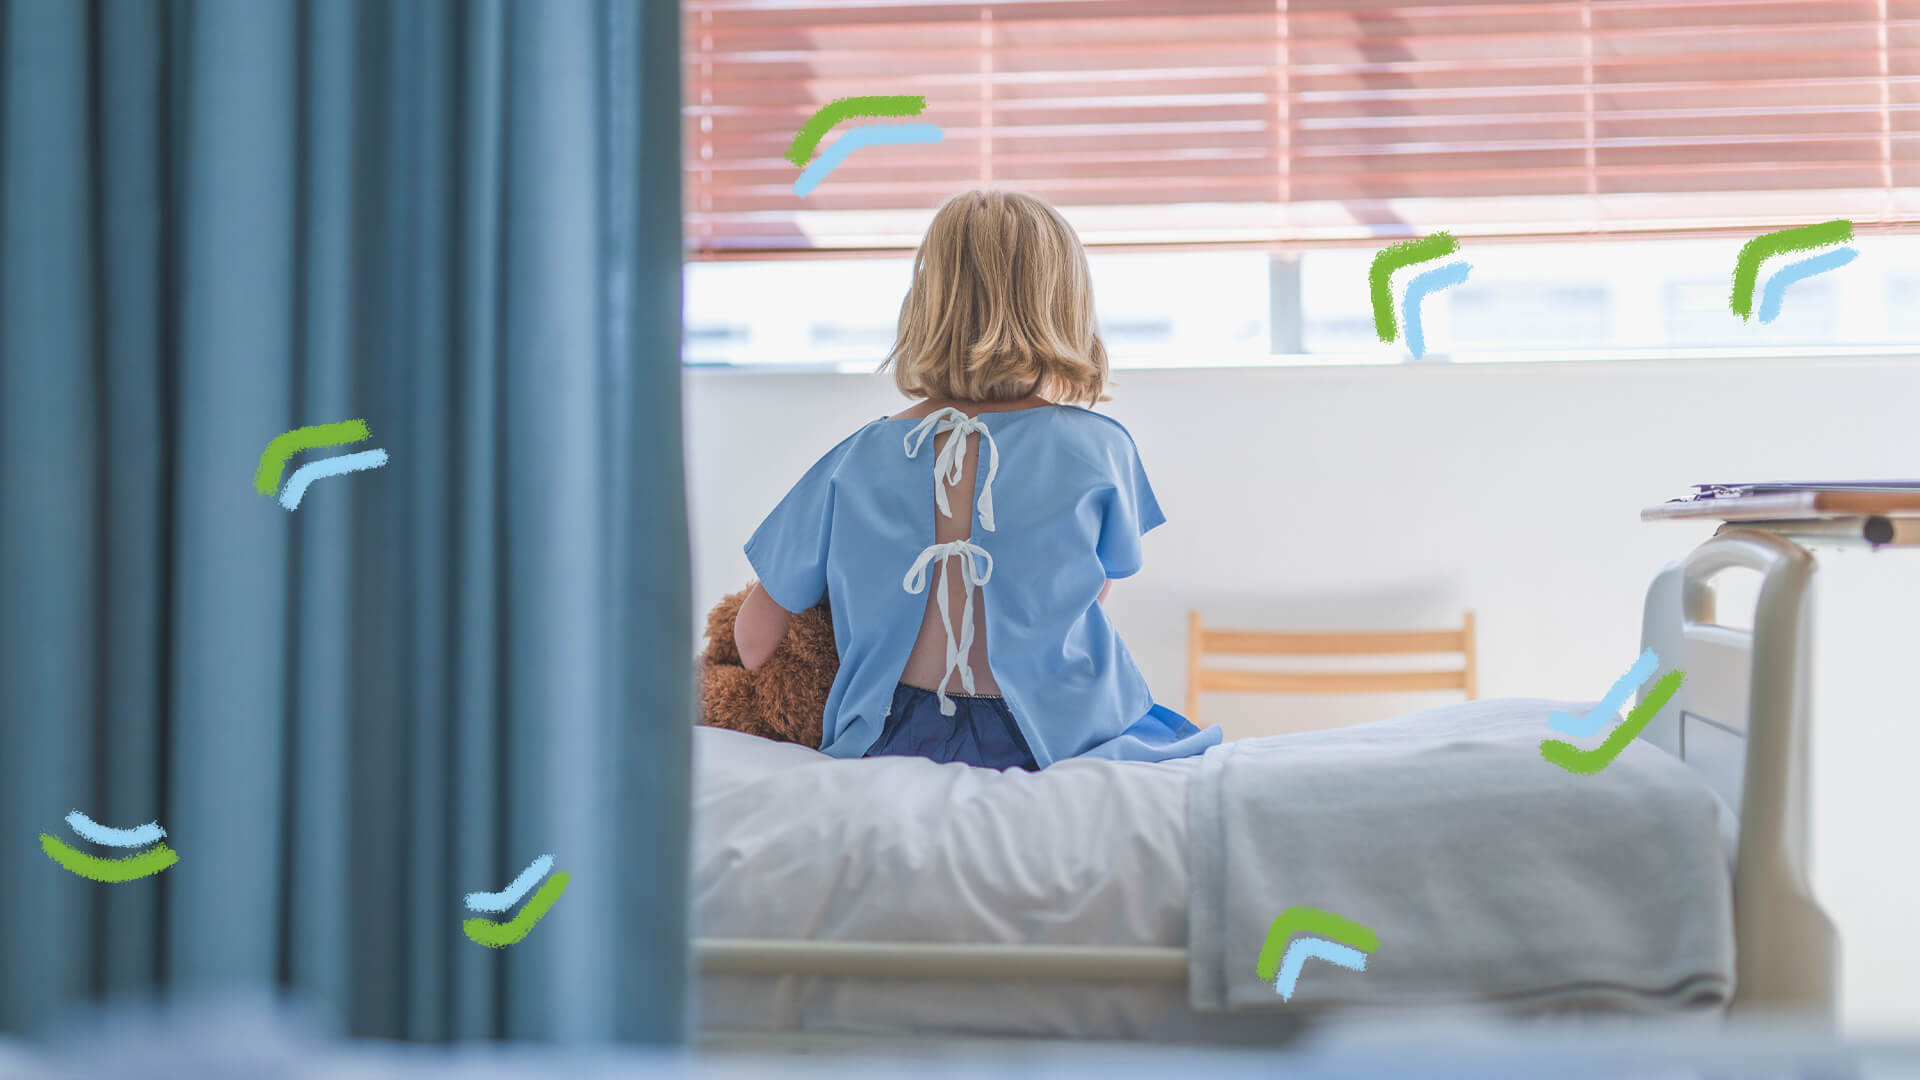 Uma criança está sentada em uma cama, de costas, olhando para janela.